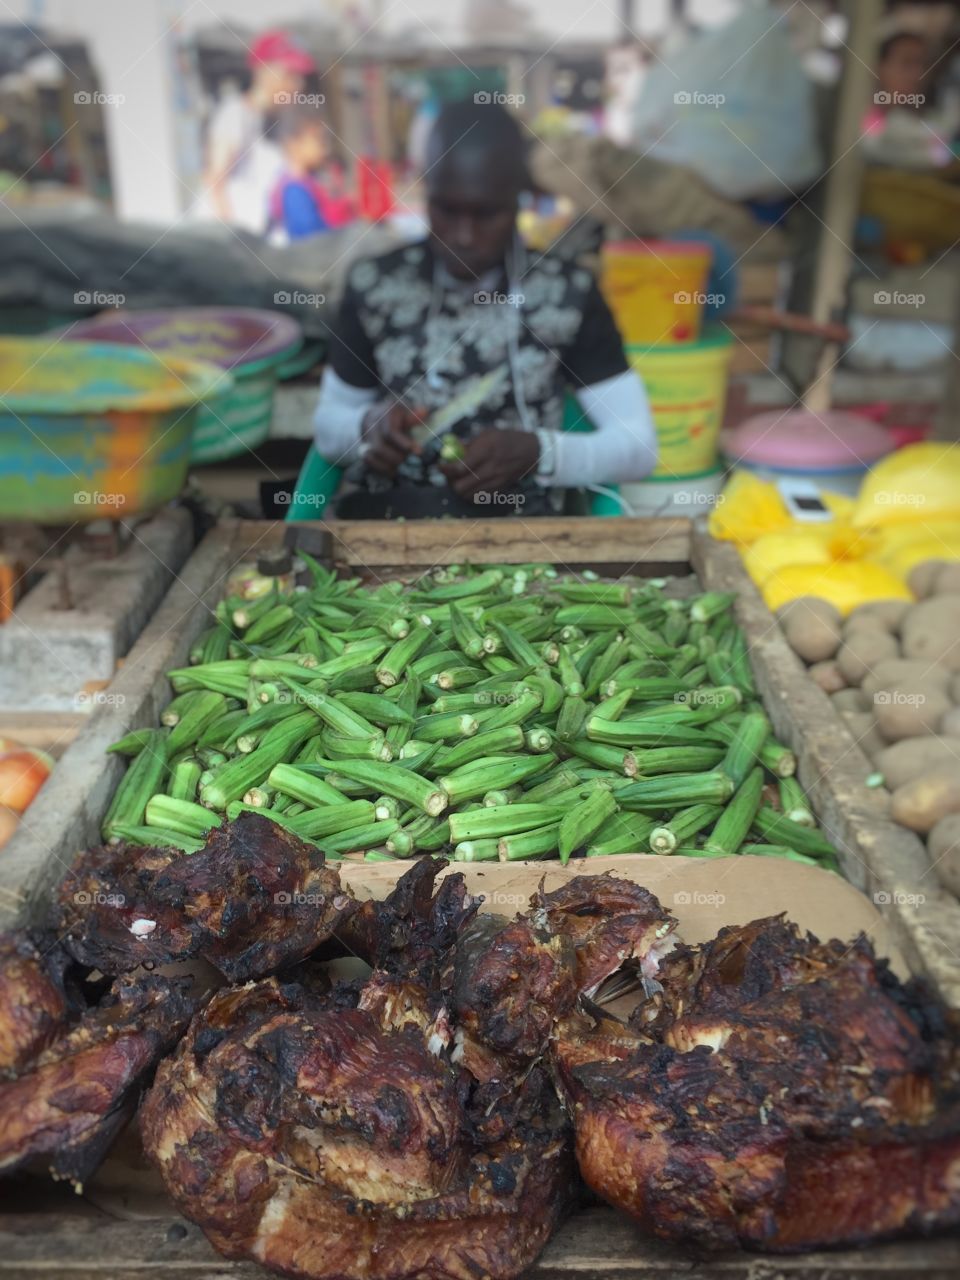 Market vendor.